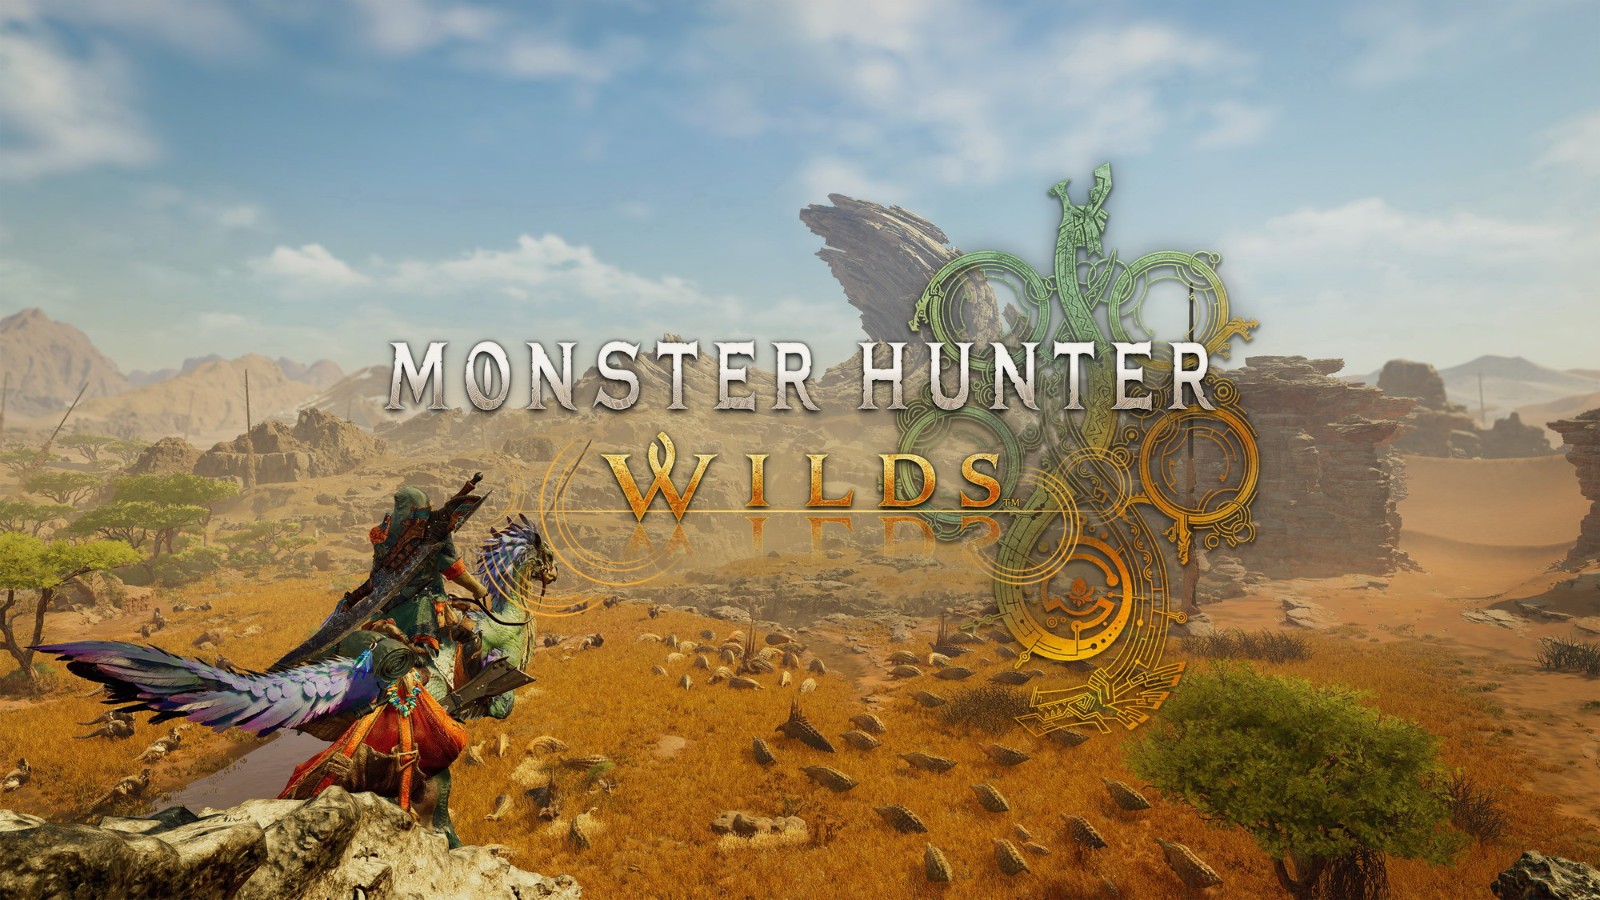 《怪物獵人:荒野》首次公佈 展示遊戯場景